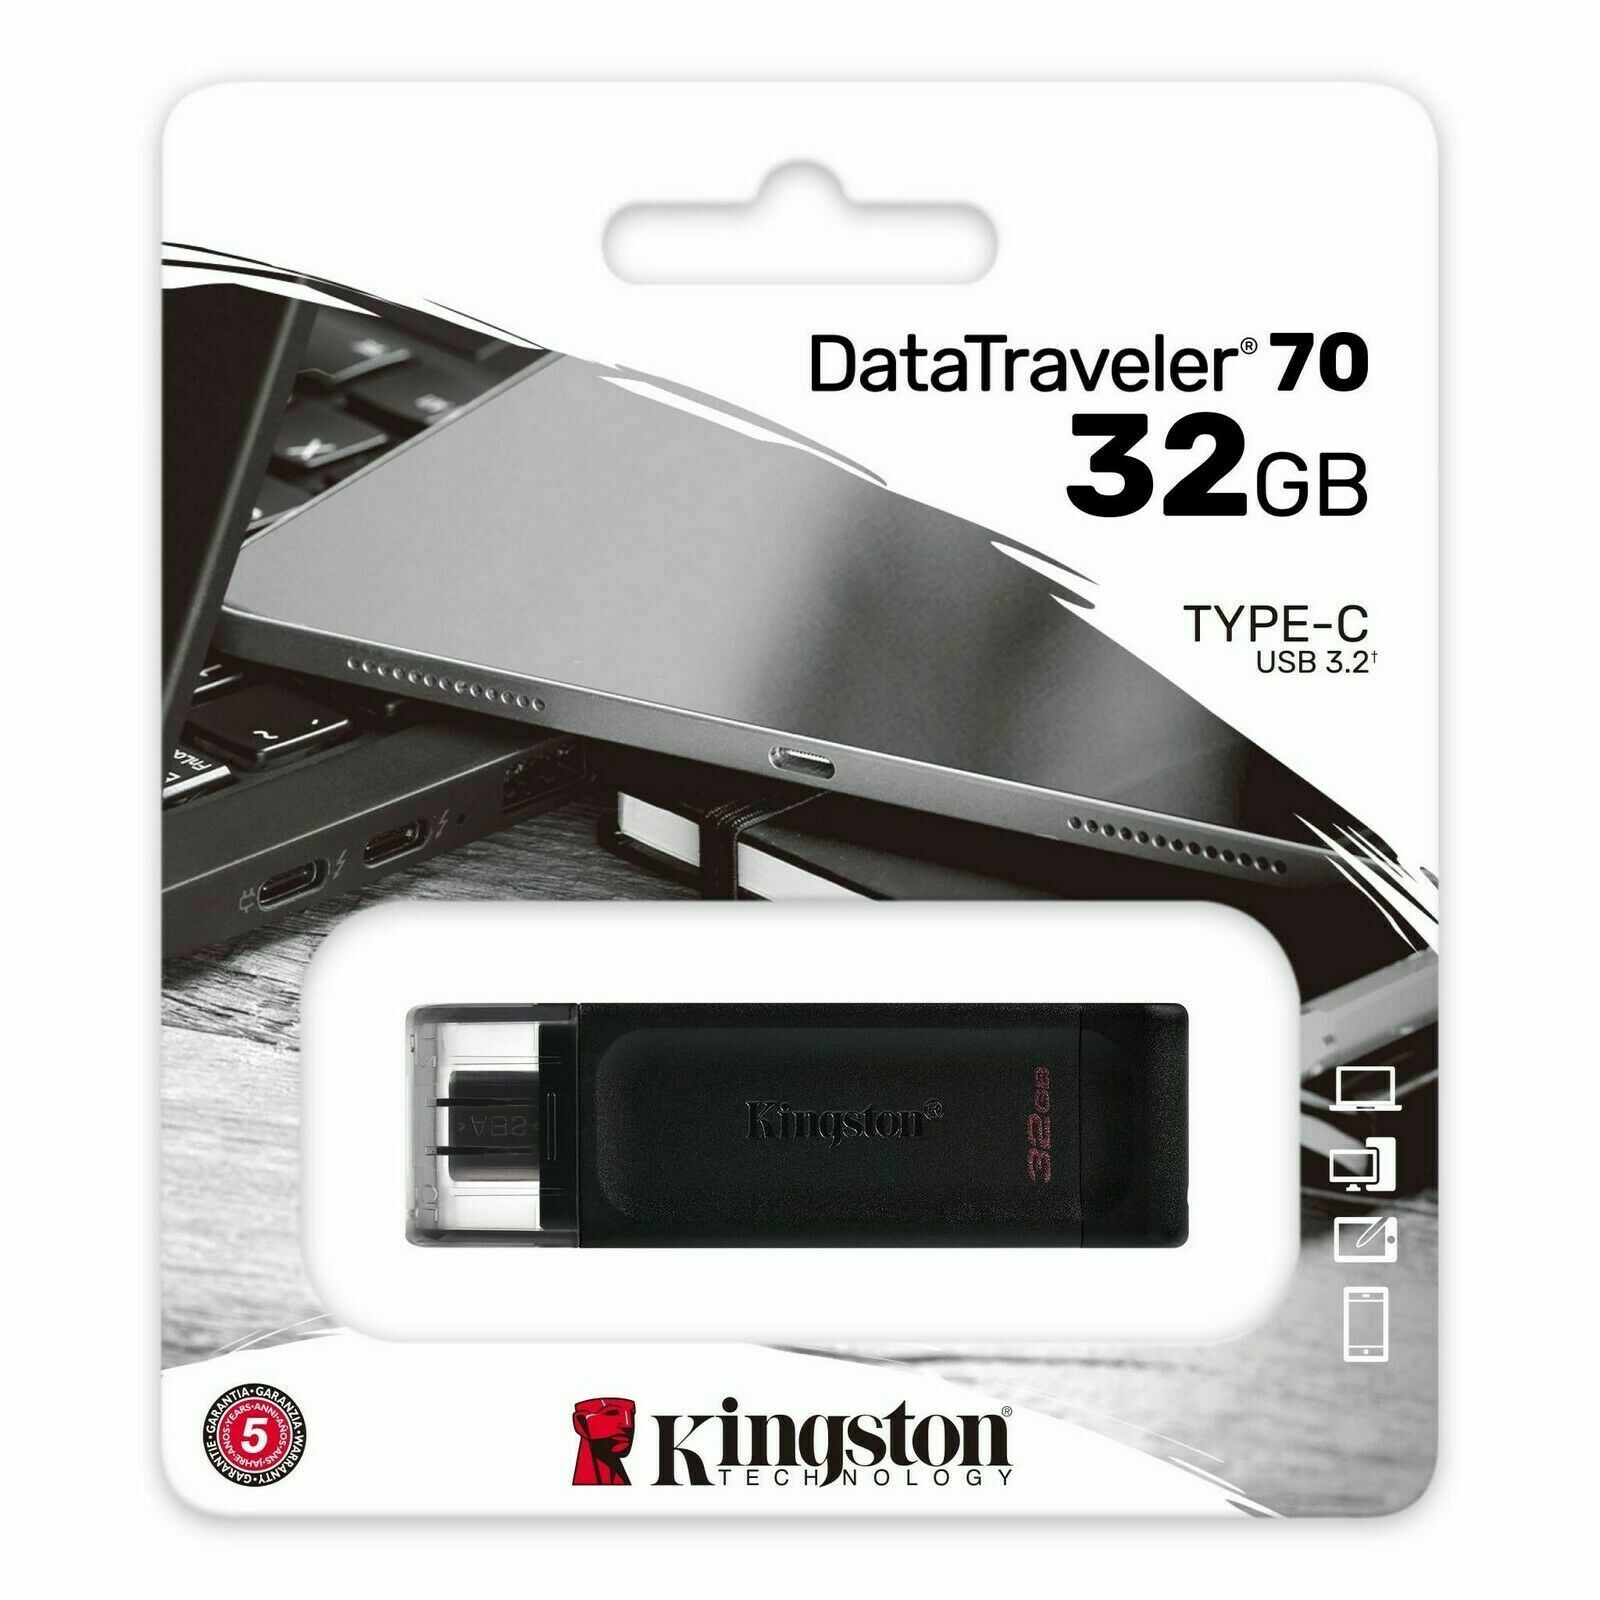 CHIAVETTA USB 3.2 TYPE-C 32 GB DATATRAVELER 70 KINGSTON – Cartolibreria  Orsino